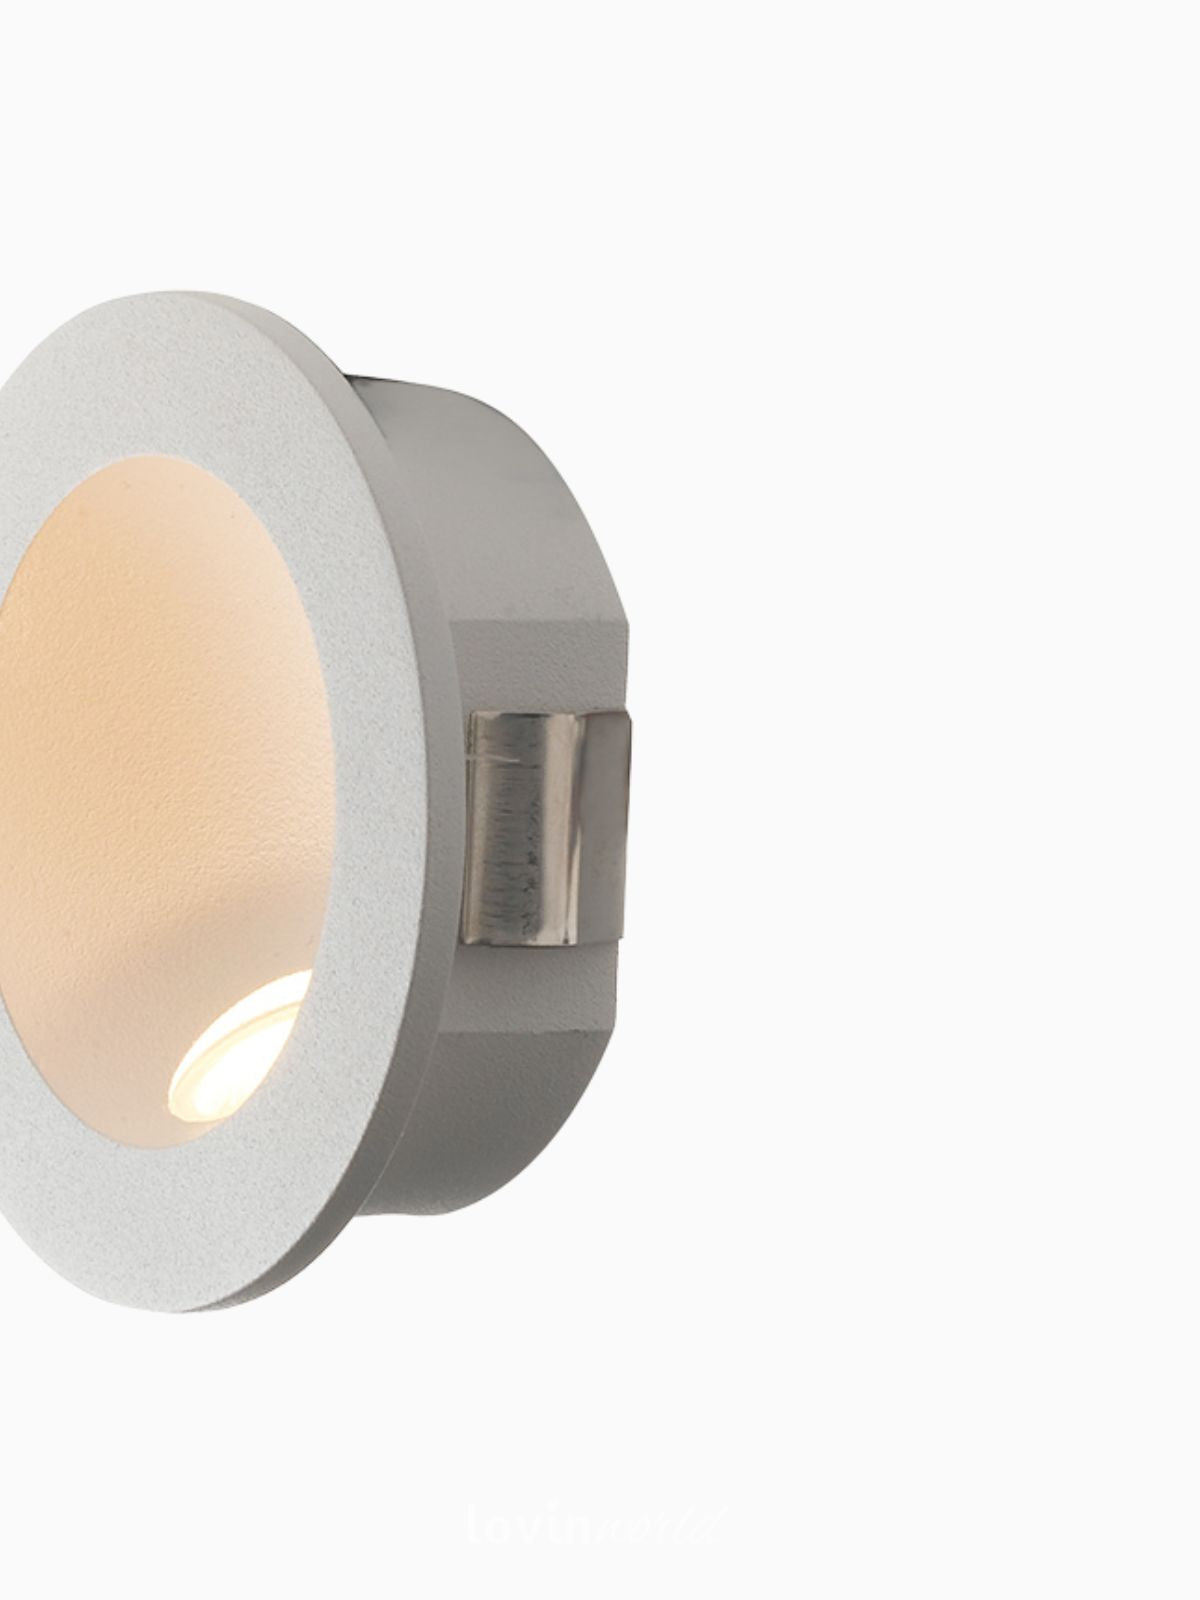 Segnapassi da esterno LED Onyx rotondo in alluminio, colore bianco-3